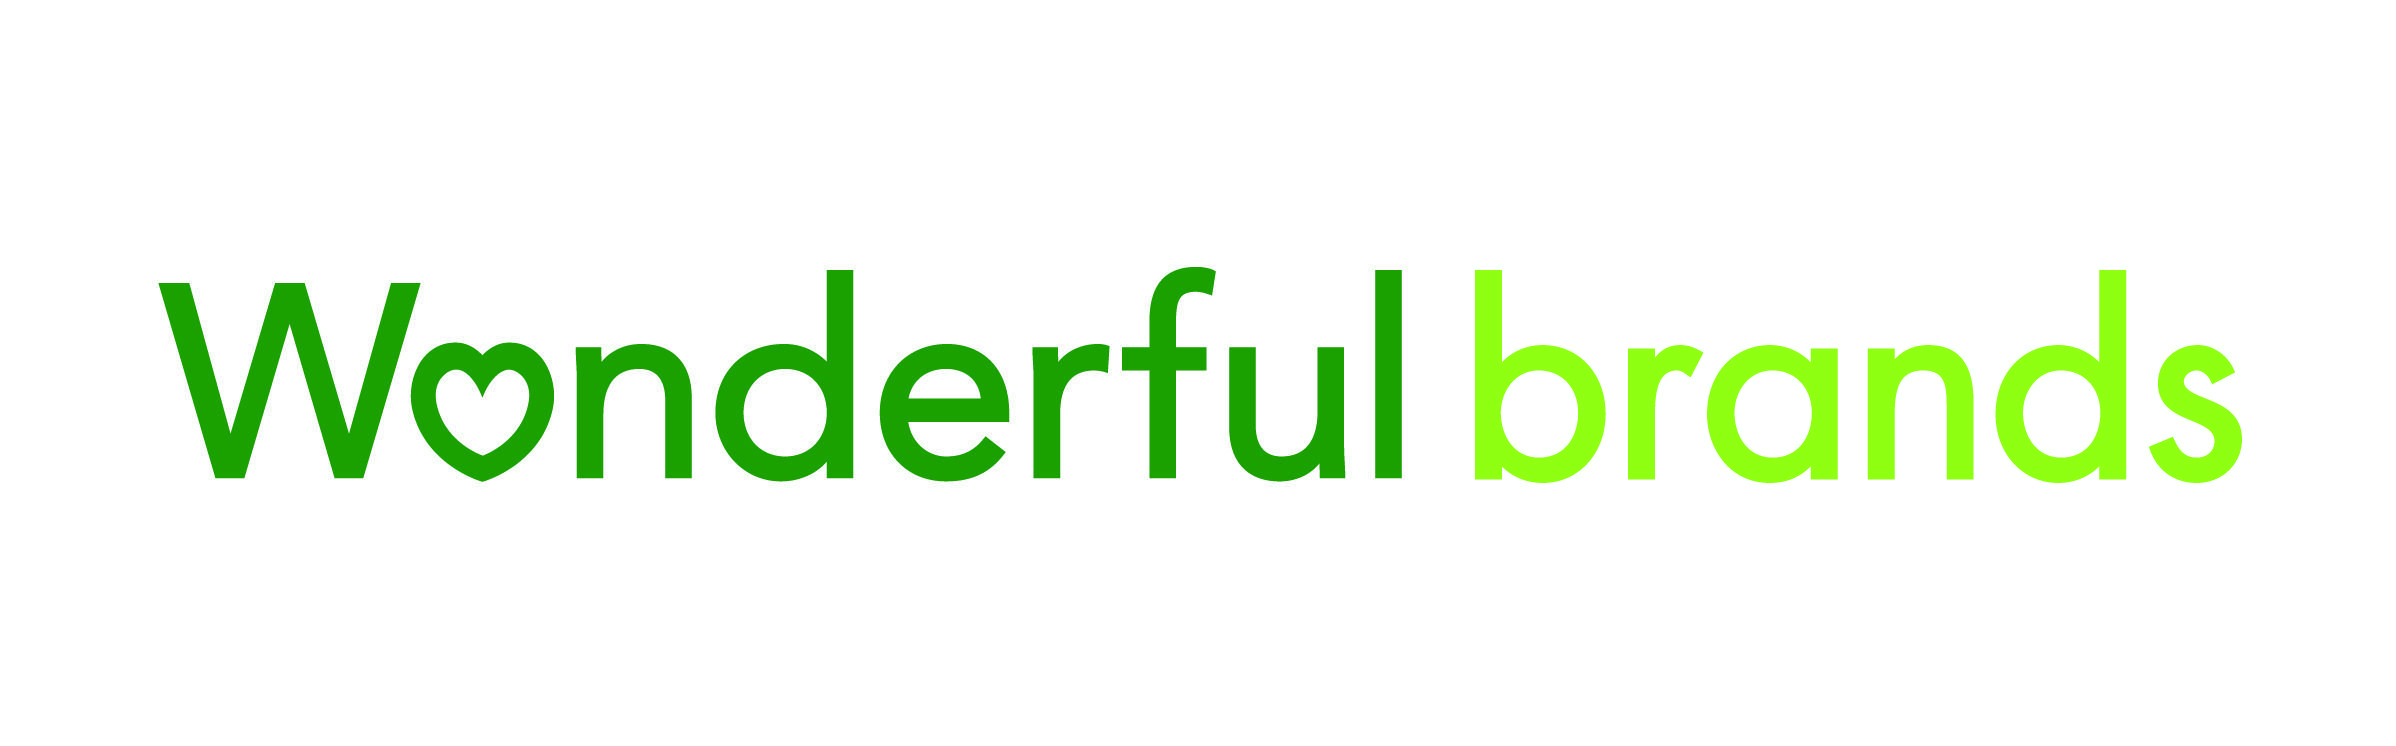 Wonderful Logo - Wonderful Brands Logo Blog Society